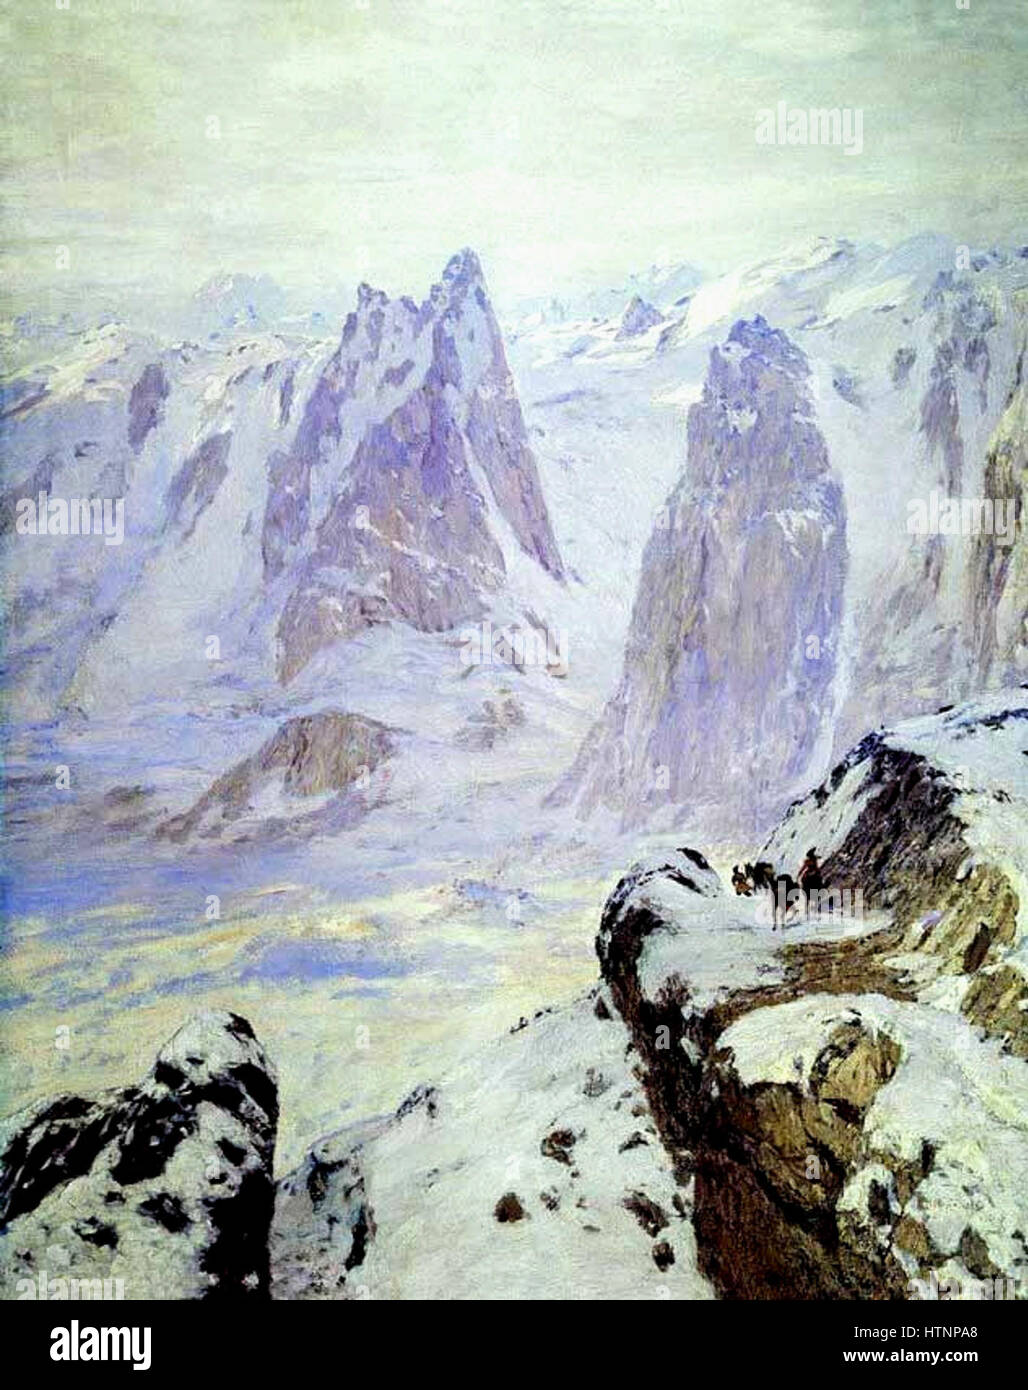 Nikolay Dubovskoy Sumerki v gorarh. Al'py 1909 Stock Photo